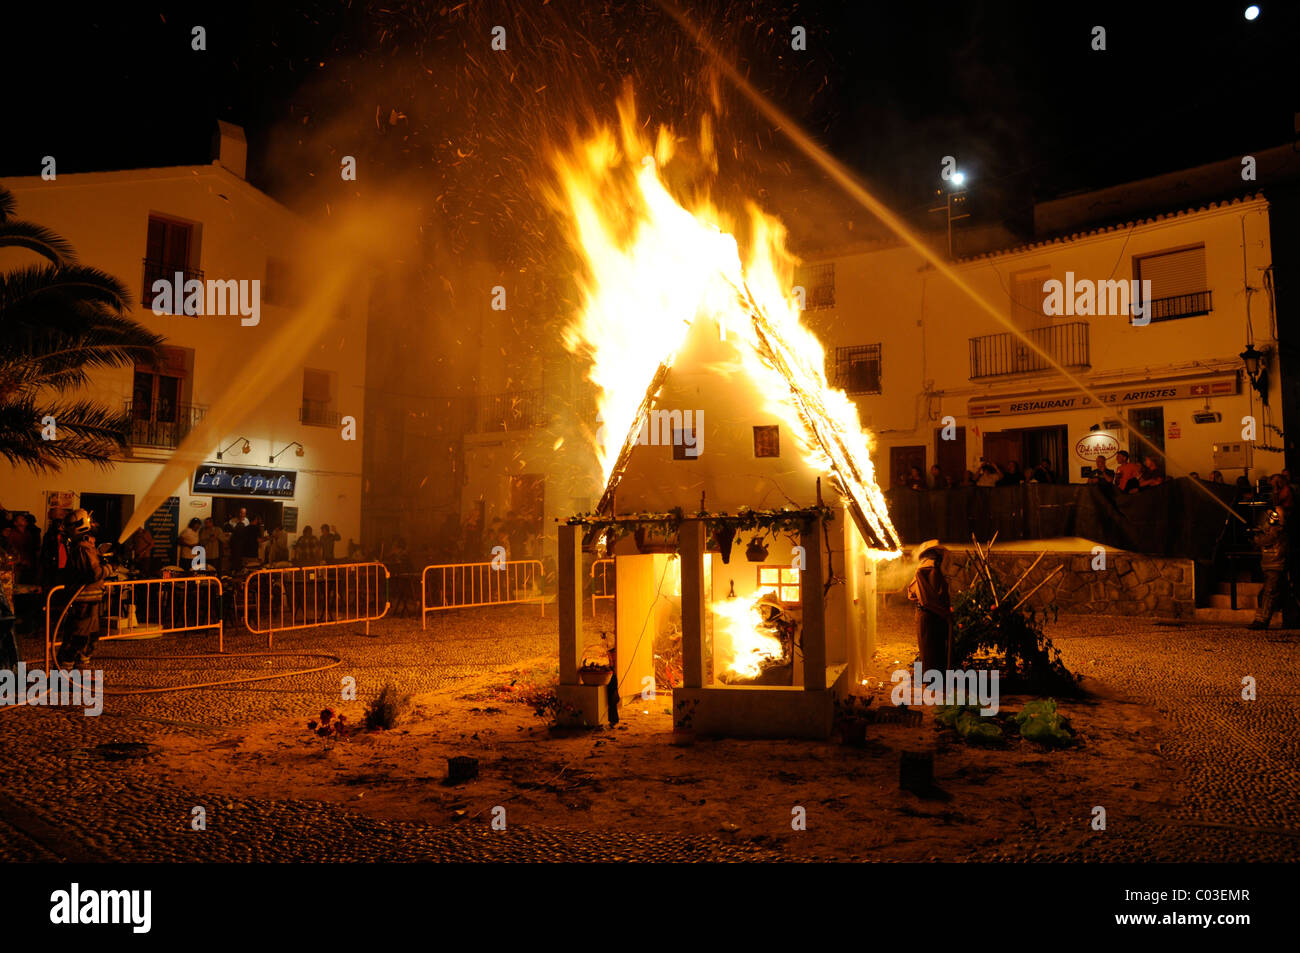 Petite maison en feu, incendie, claire, Fiesta de San Juan, Joan, festival, manifestation traditionnelle, tradition, coutume, Altea Banque D'Images